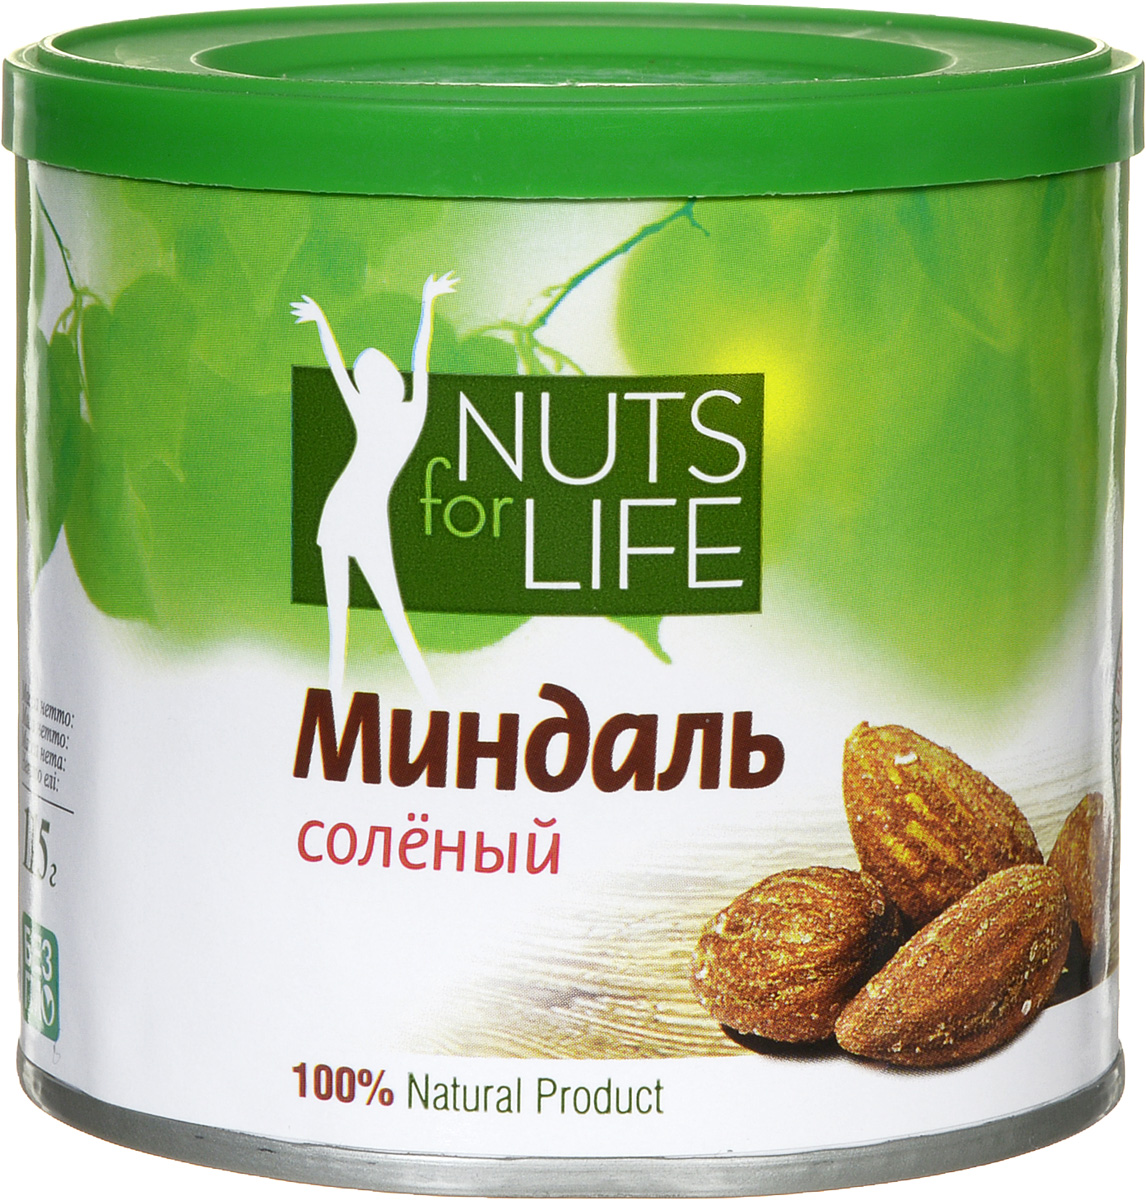 Фото Nuts for Life Миндаль обжаренный соленый, 115 г. Купить  в РФ